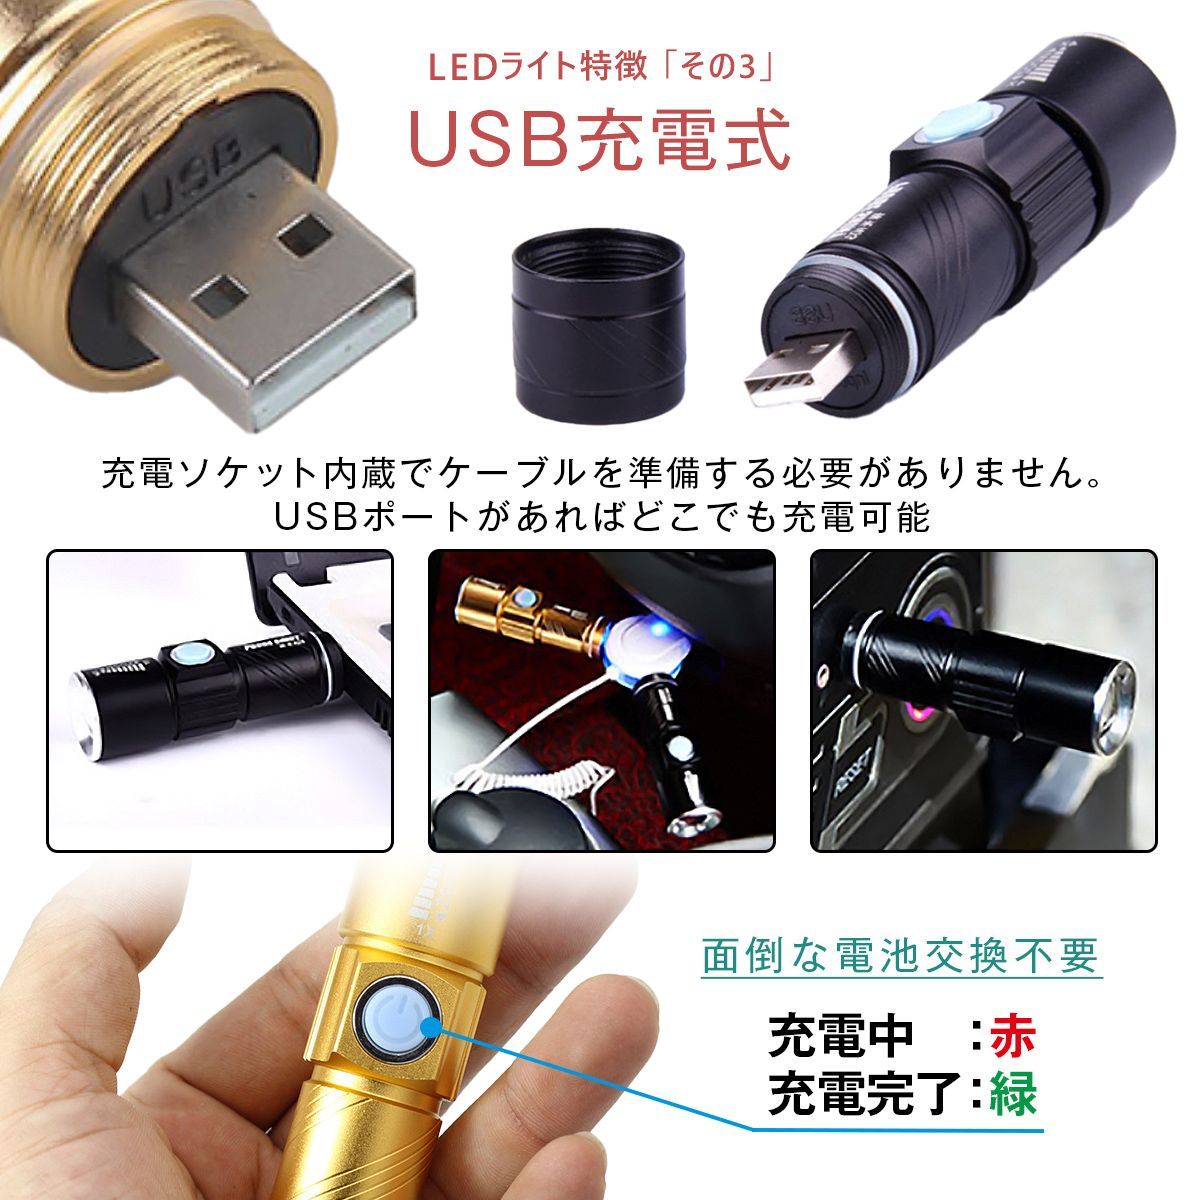 円筒型ライト 3段階LED USB充電 防水 コンパクト 黒 通販